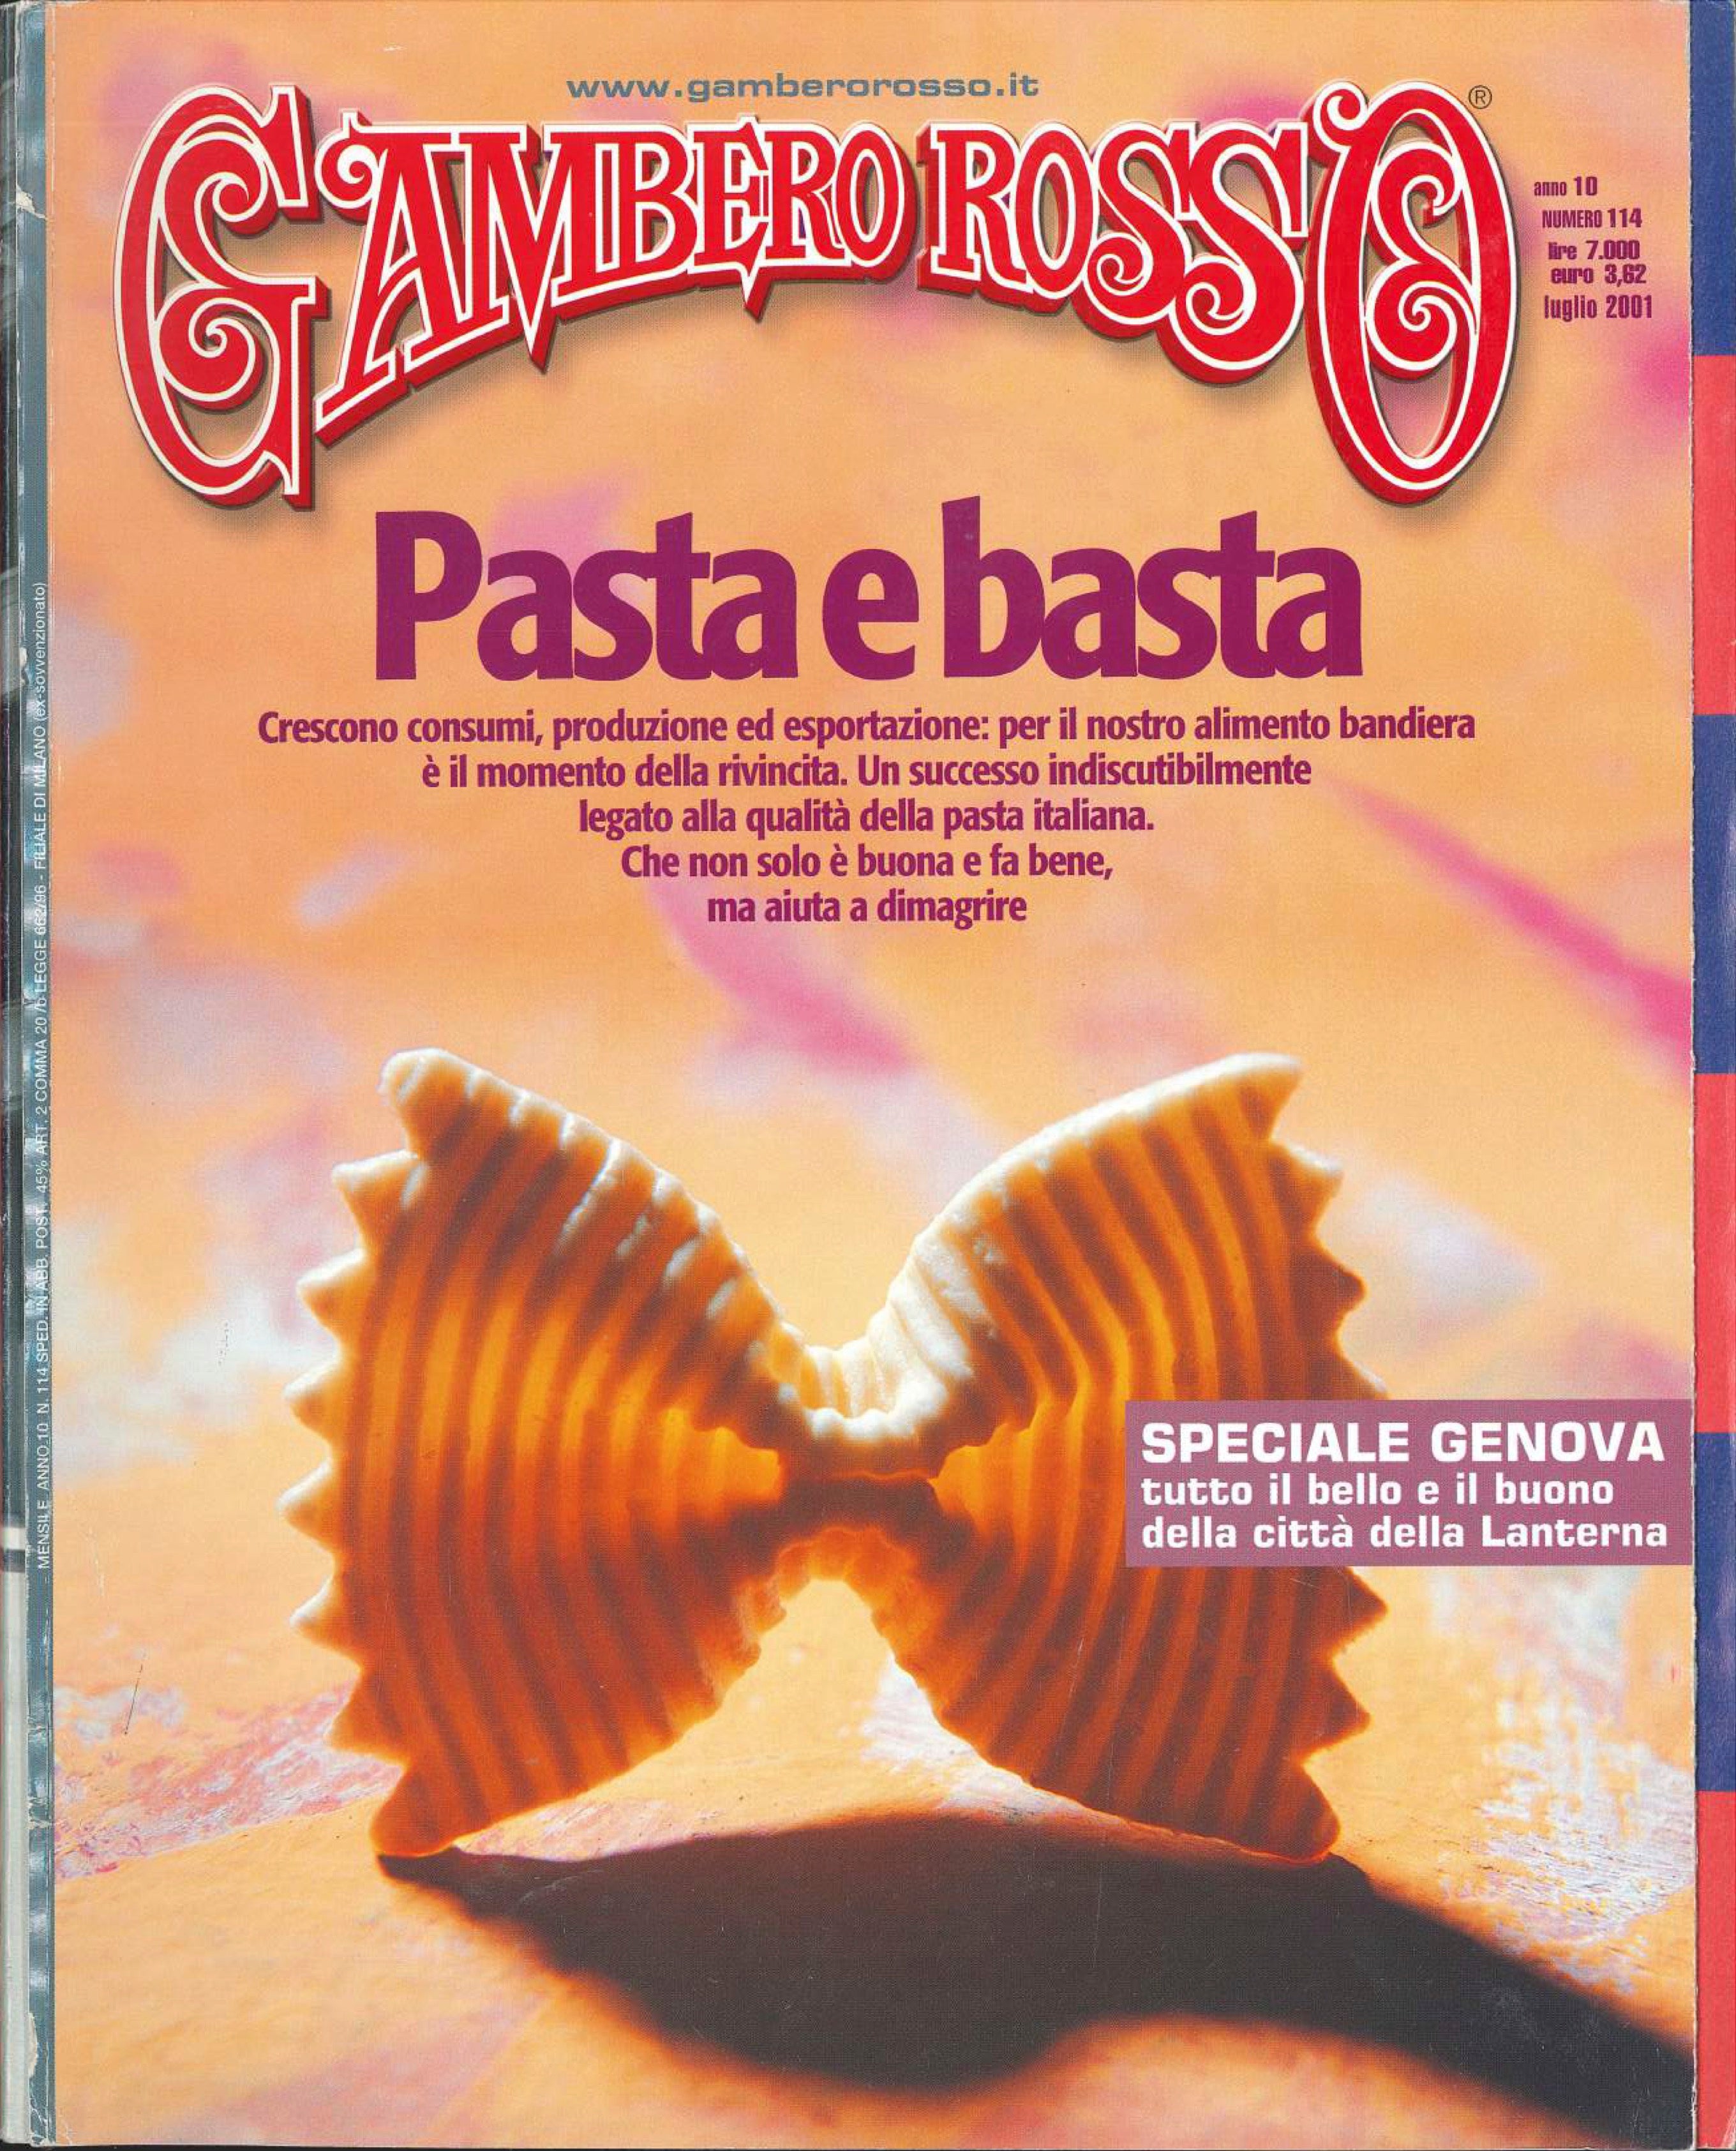 La rivista Gambero Rosso rende omaggio alla pasta Fabbri